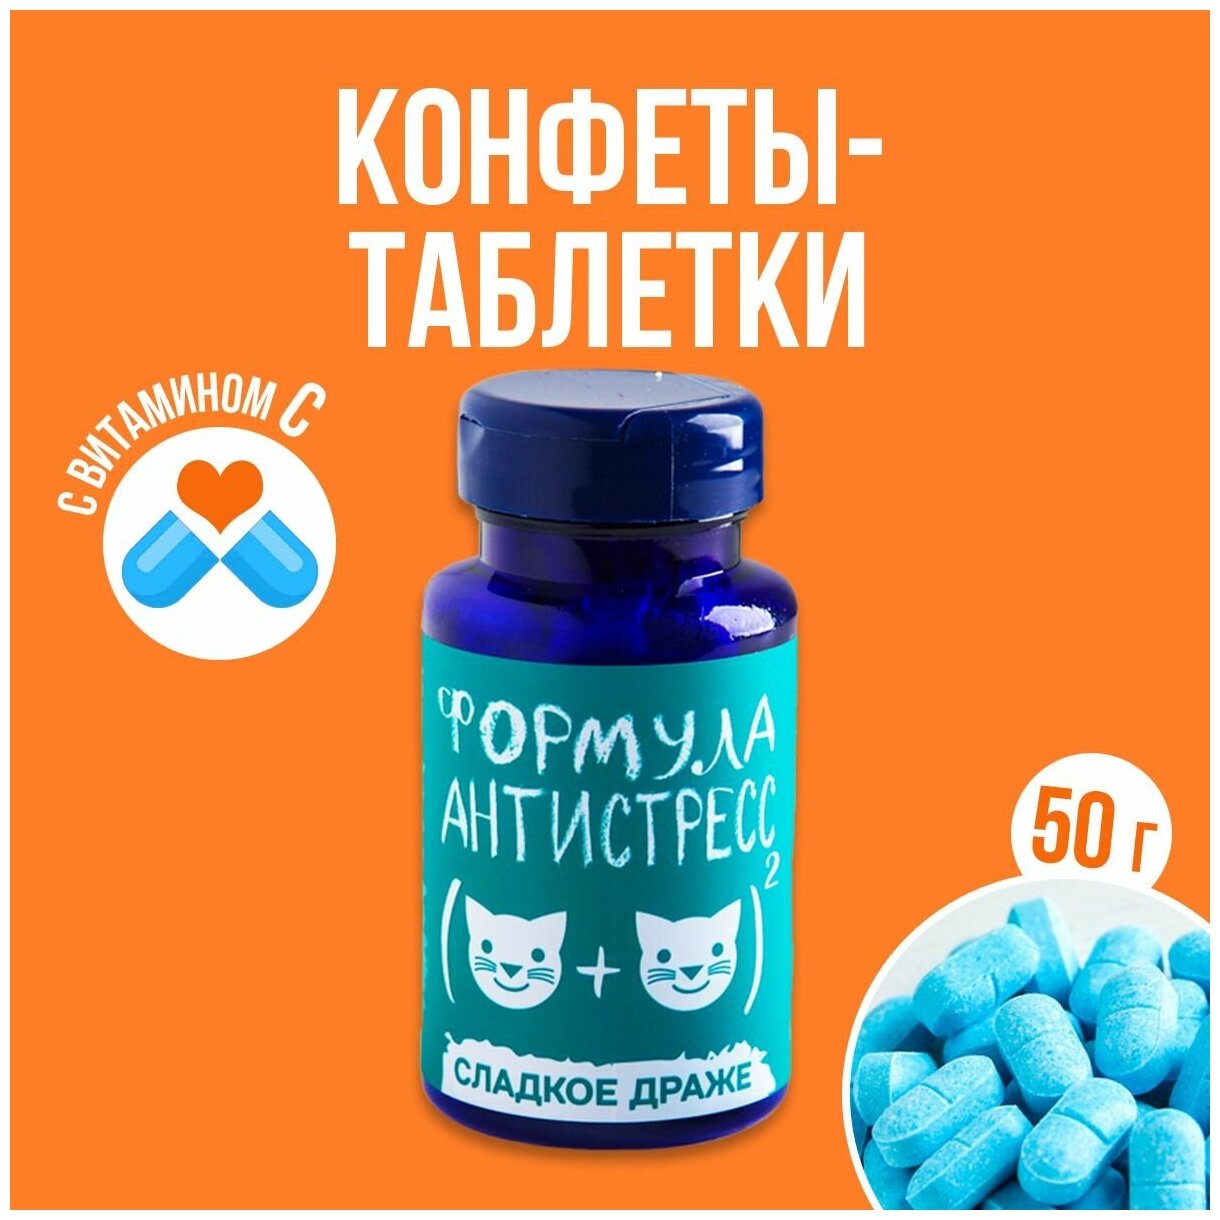 Конфеты - таблетки с приколом "Формула антистресс" 50 гр.